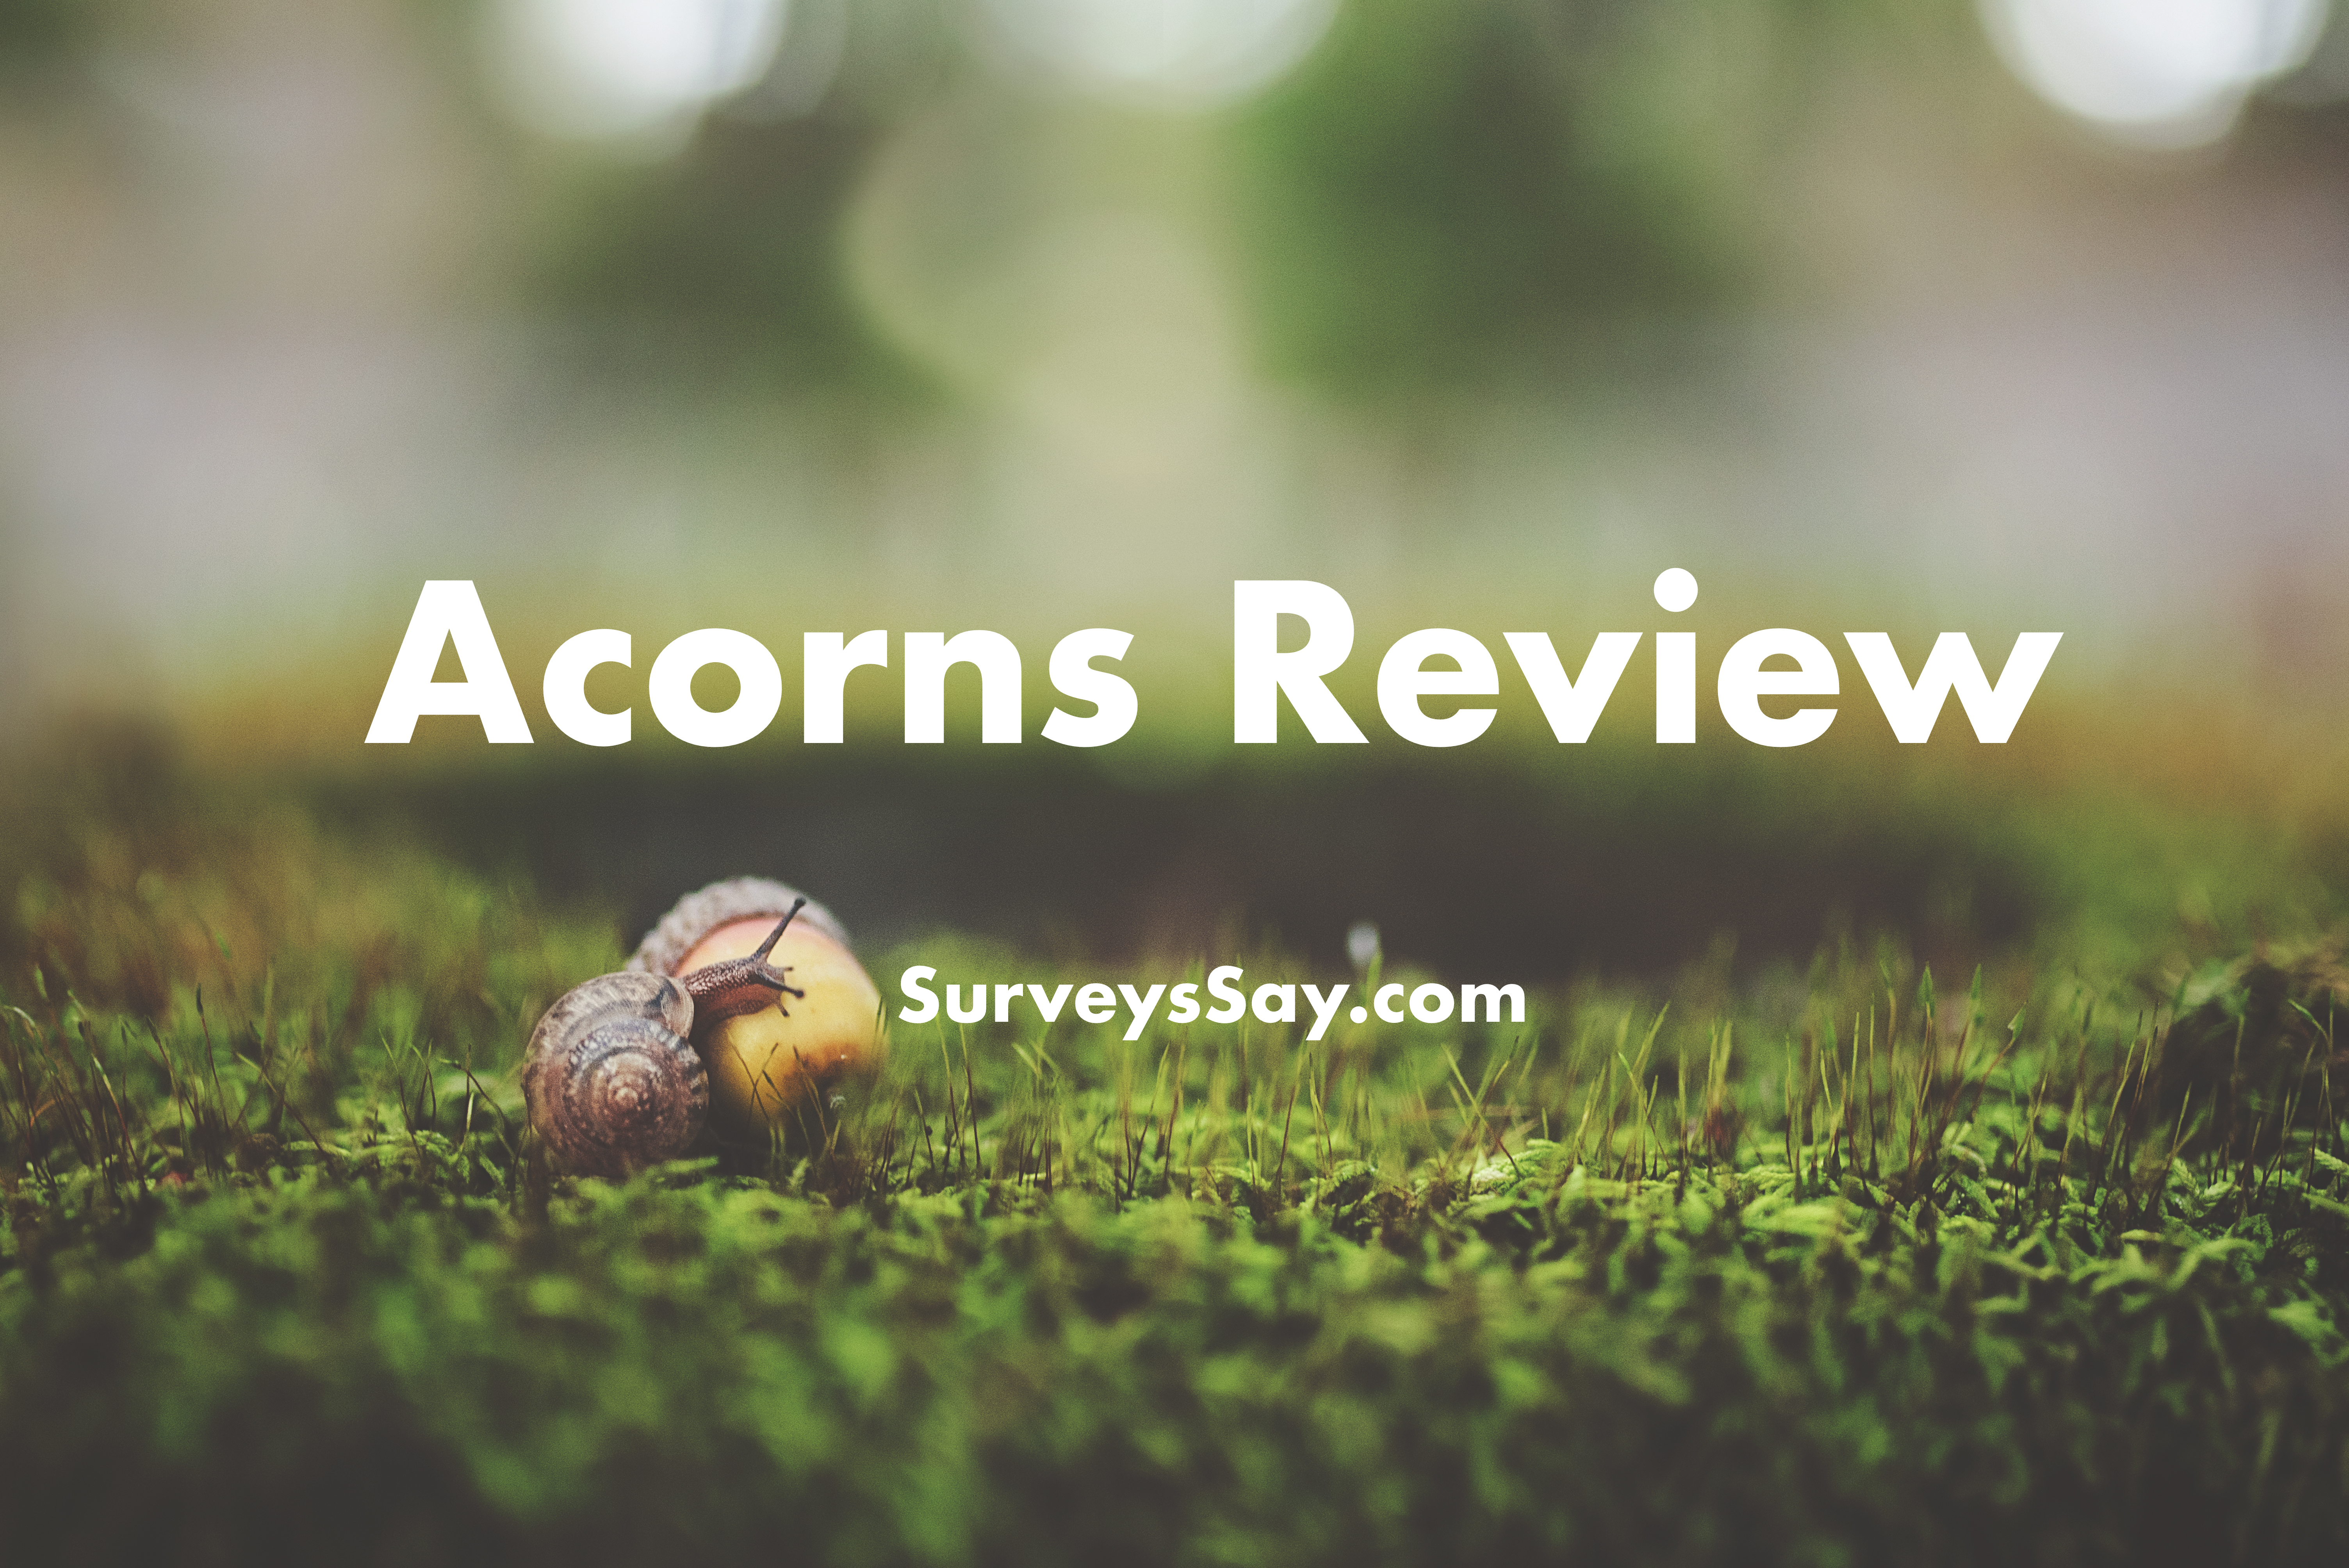 Acorns Review 2018: Legit Spare Change Investing App or Scam?